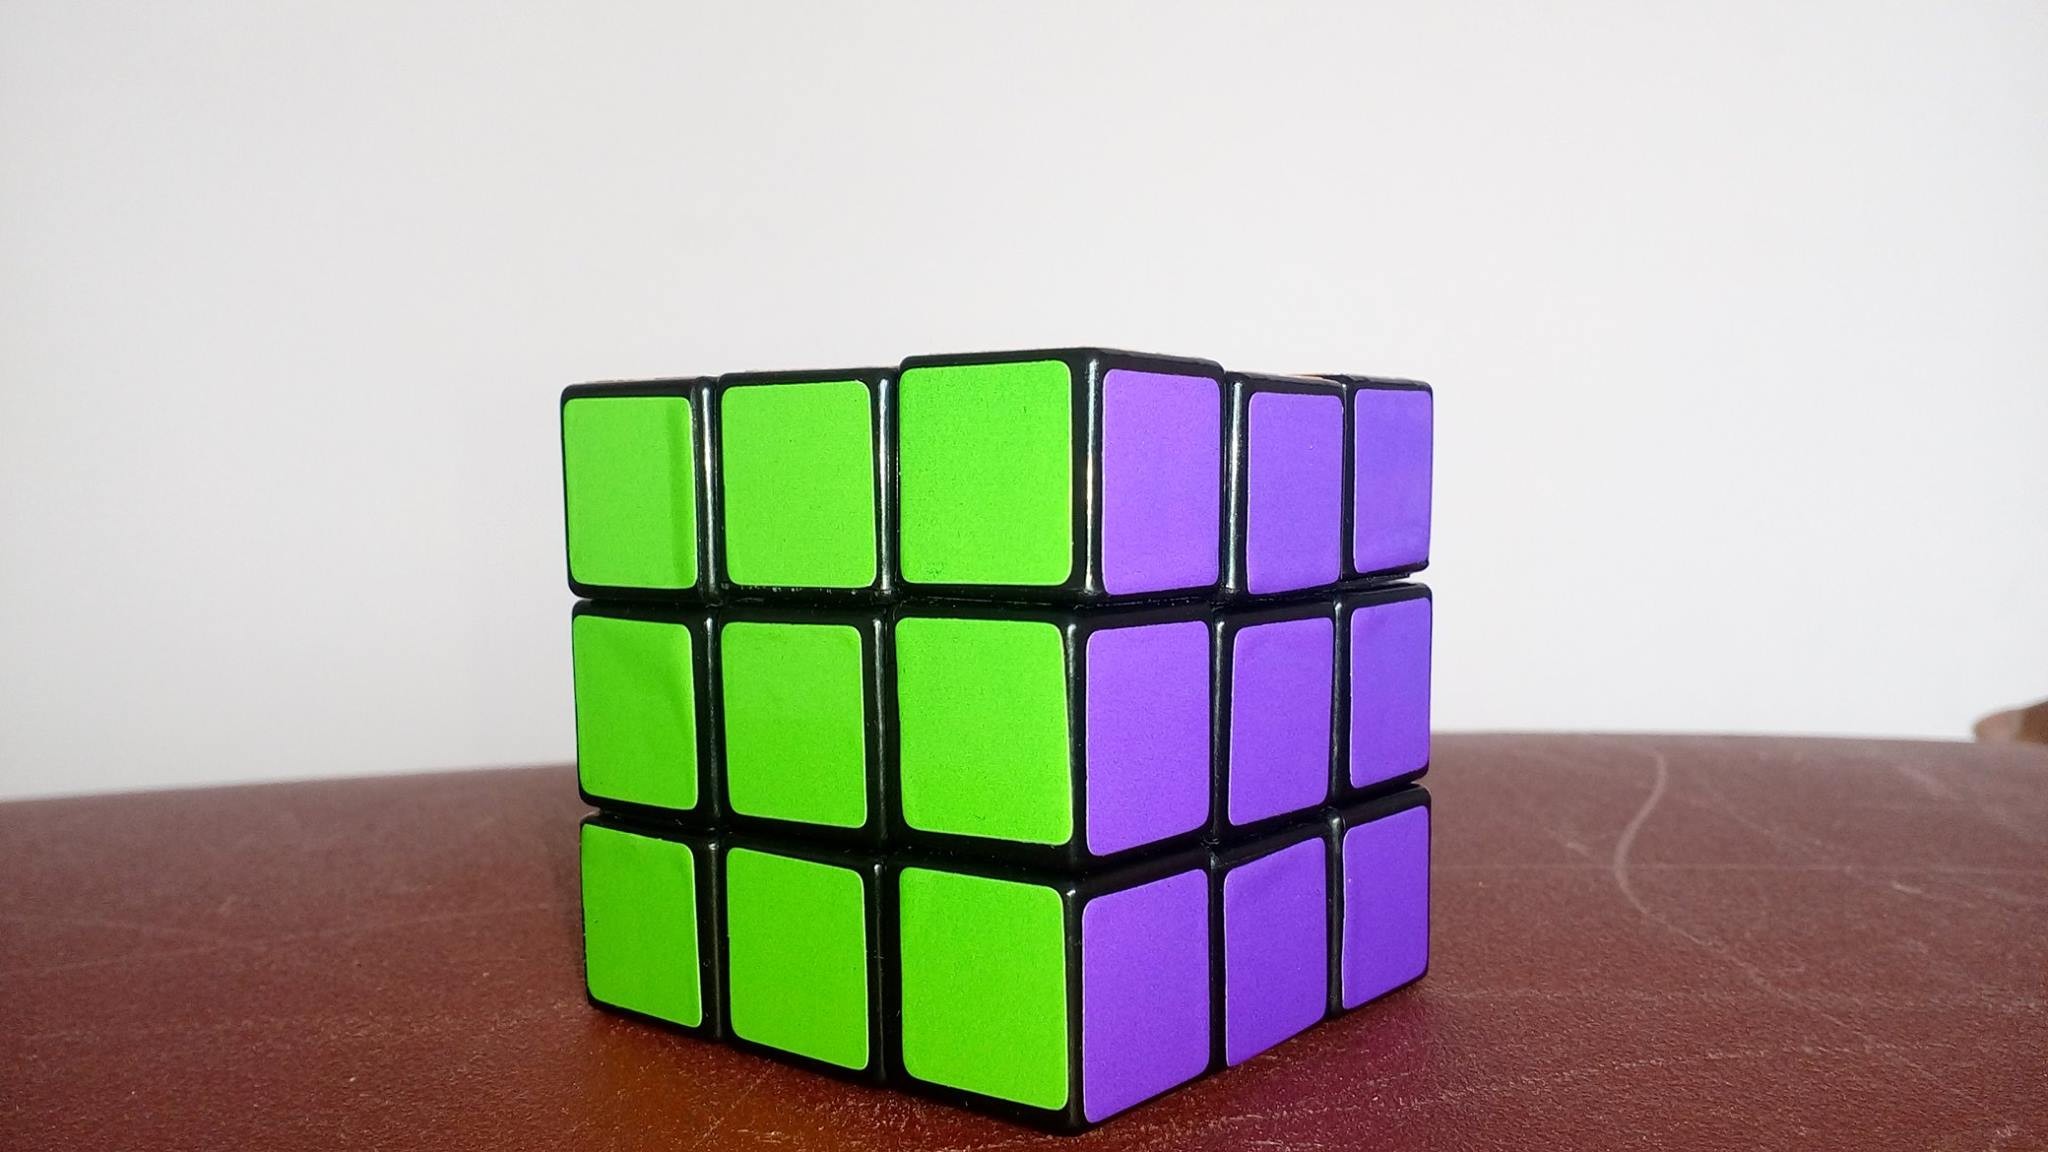 General 2048x1152 green purple 3D Blocks Rubik's Cube